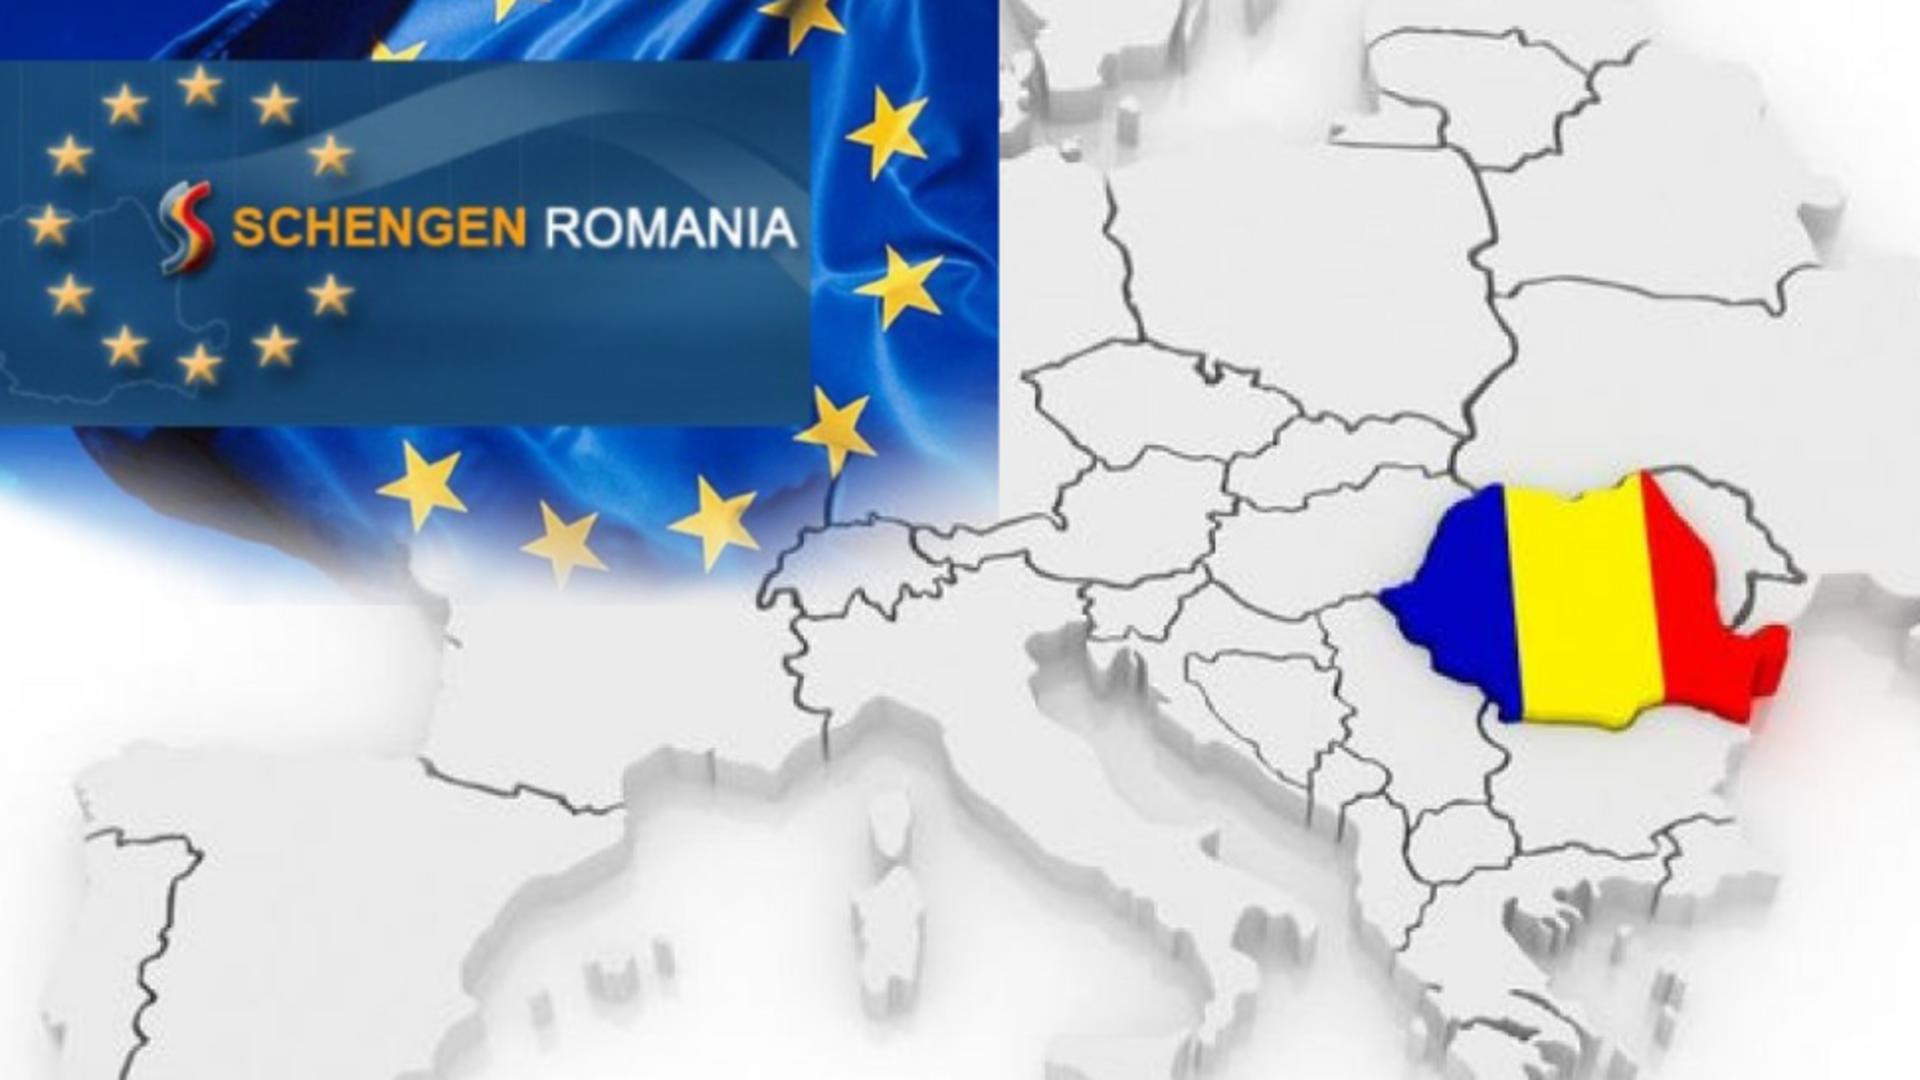 Austria nu dă înapoi: Cere amânarea aderării României la Schengen - Propunerea-șoc pentru 2023